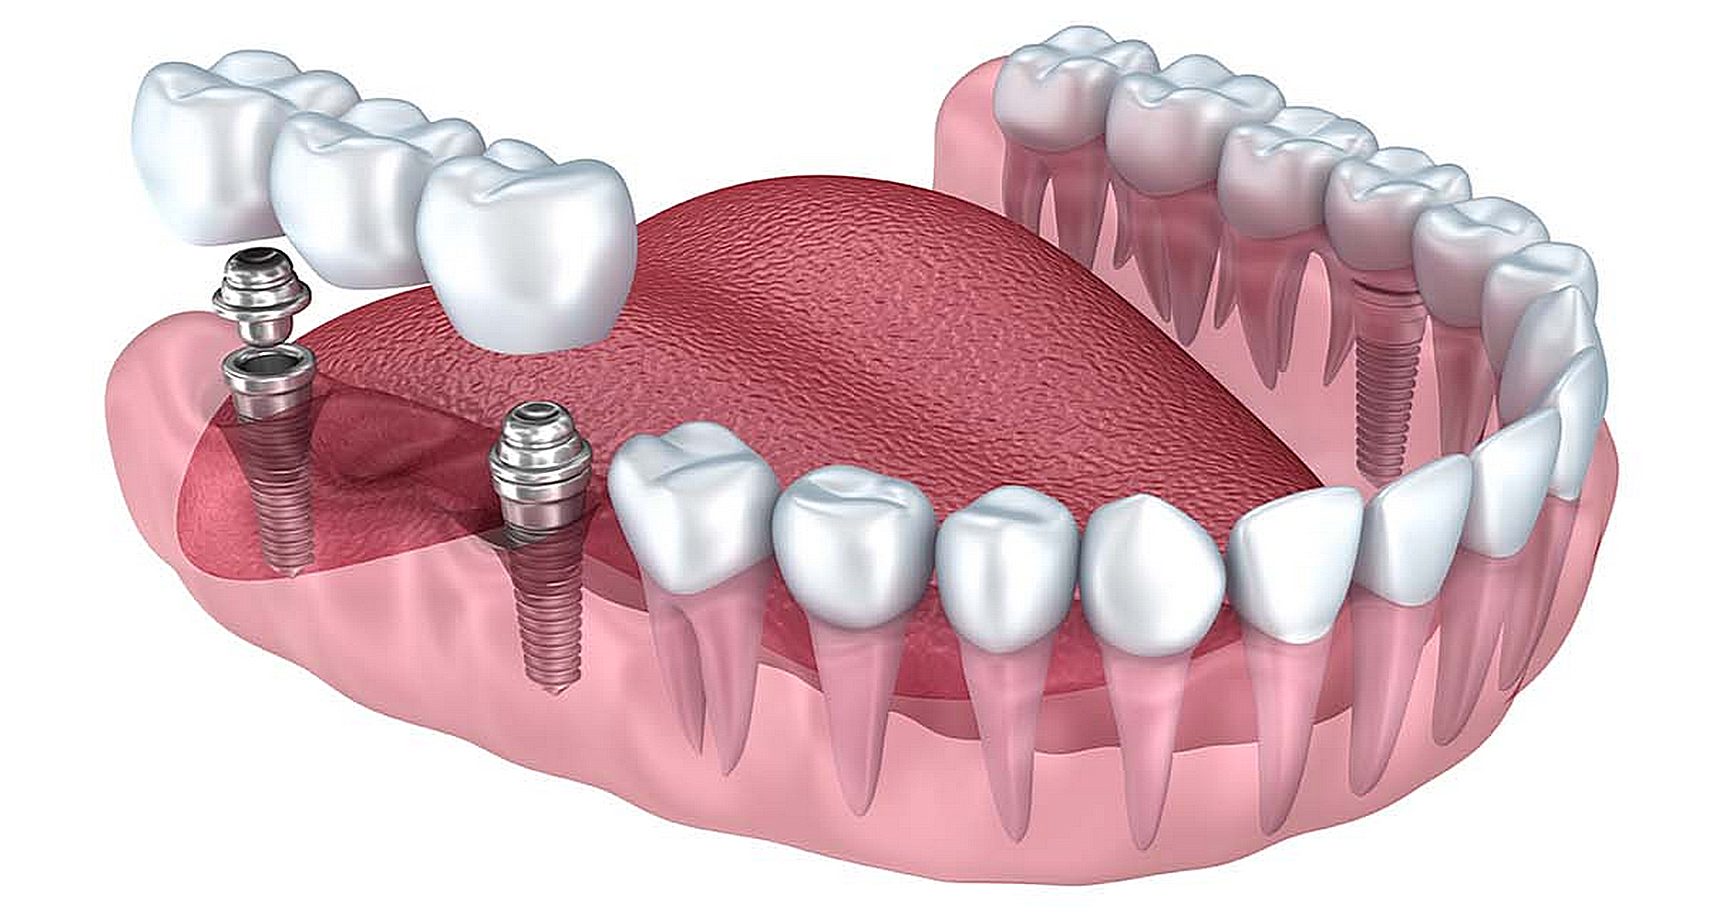 Имплантация зубов под ключ: секрет долговечной улыбки